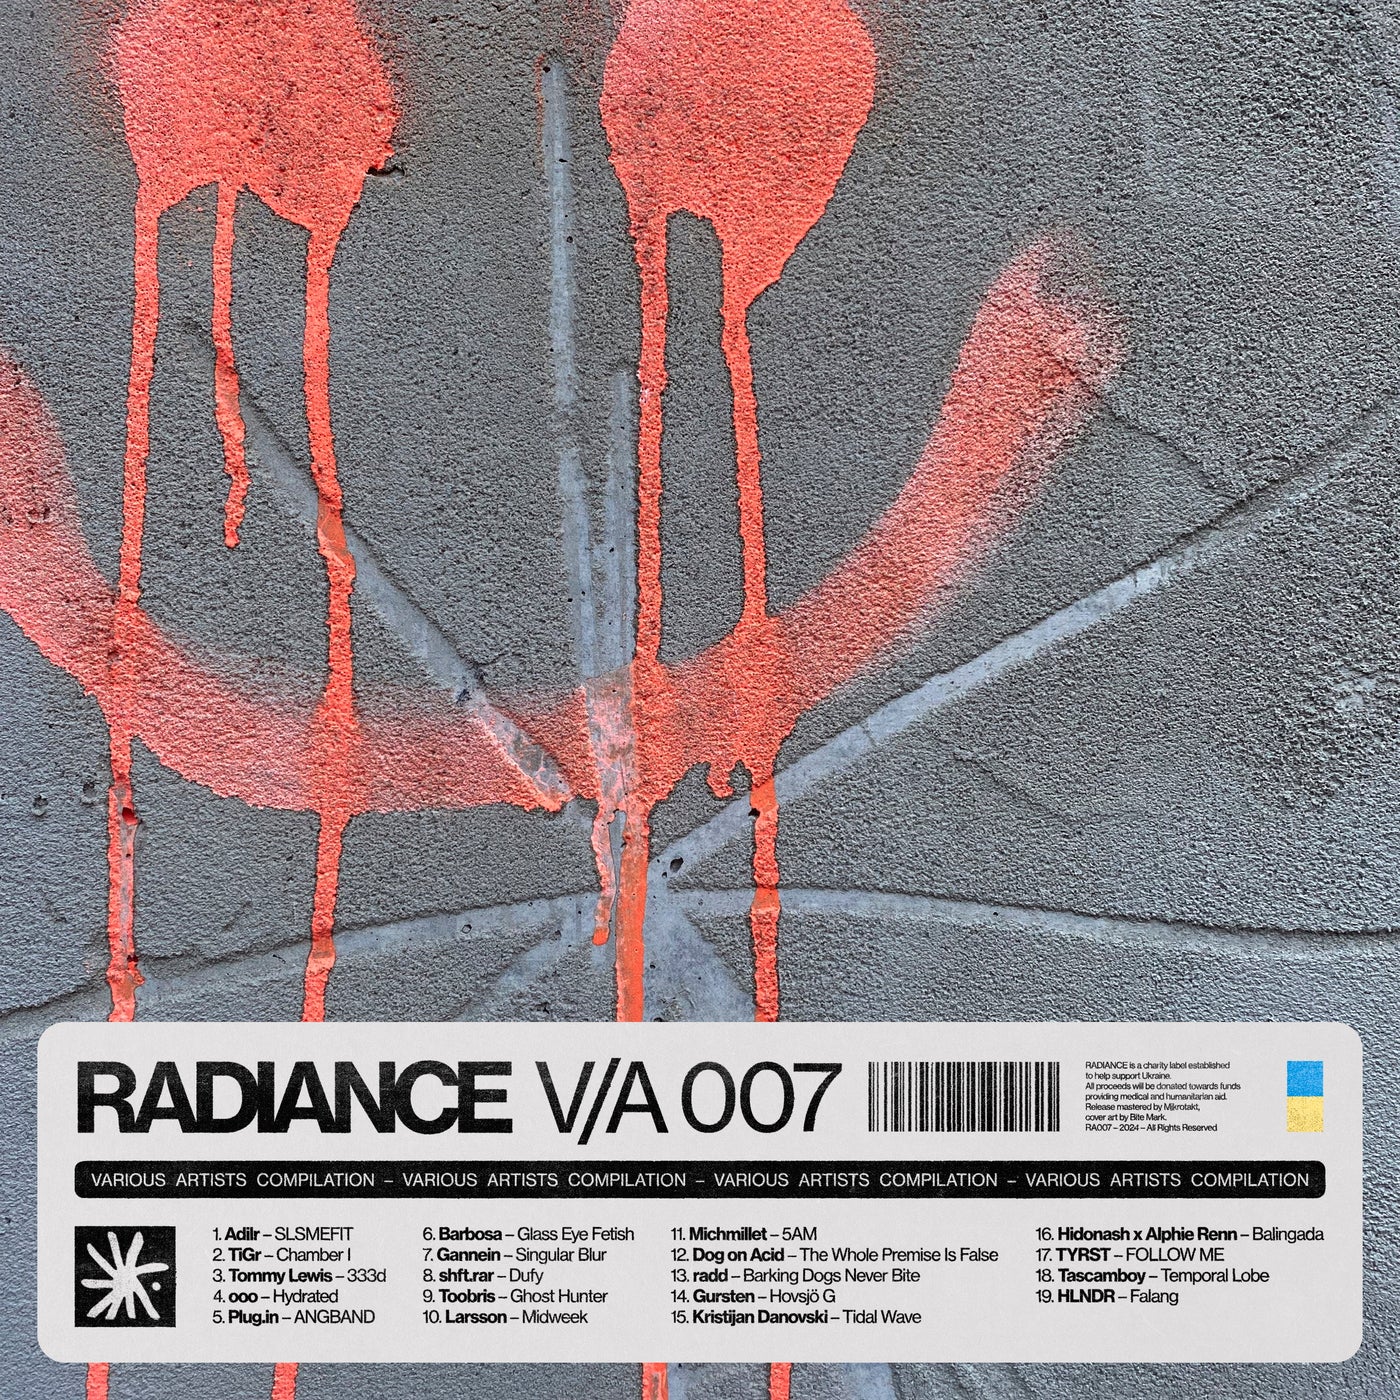 Radiance V/A 007